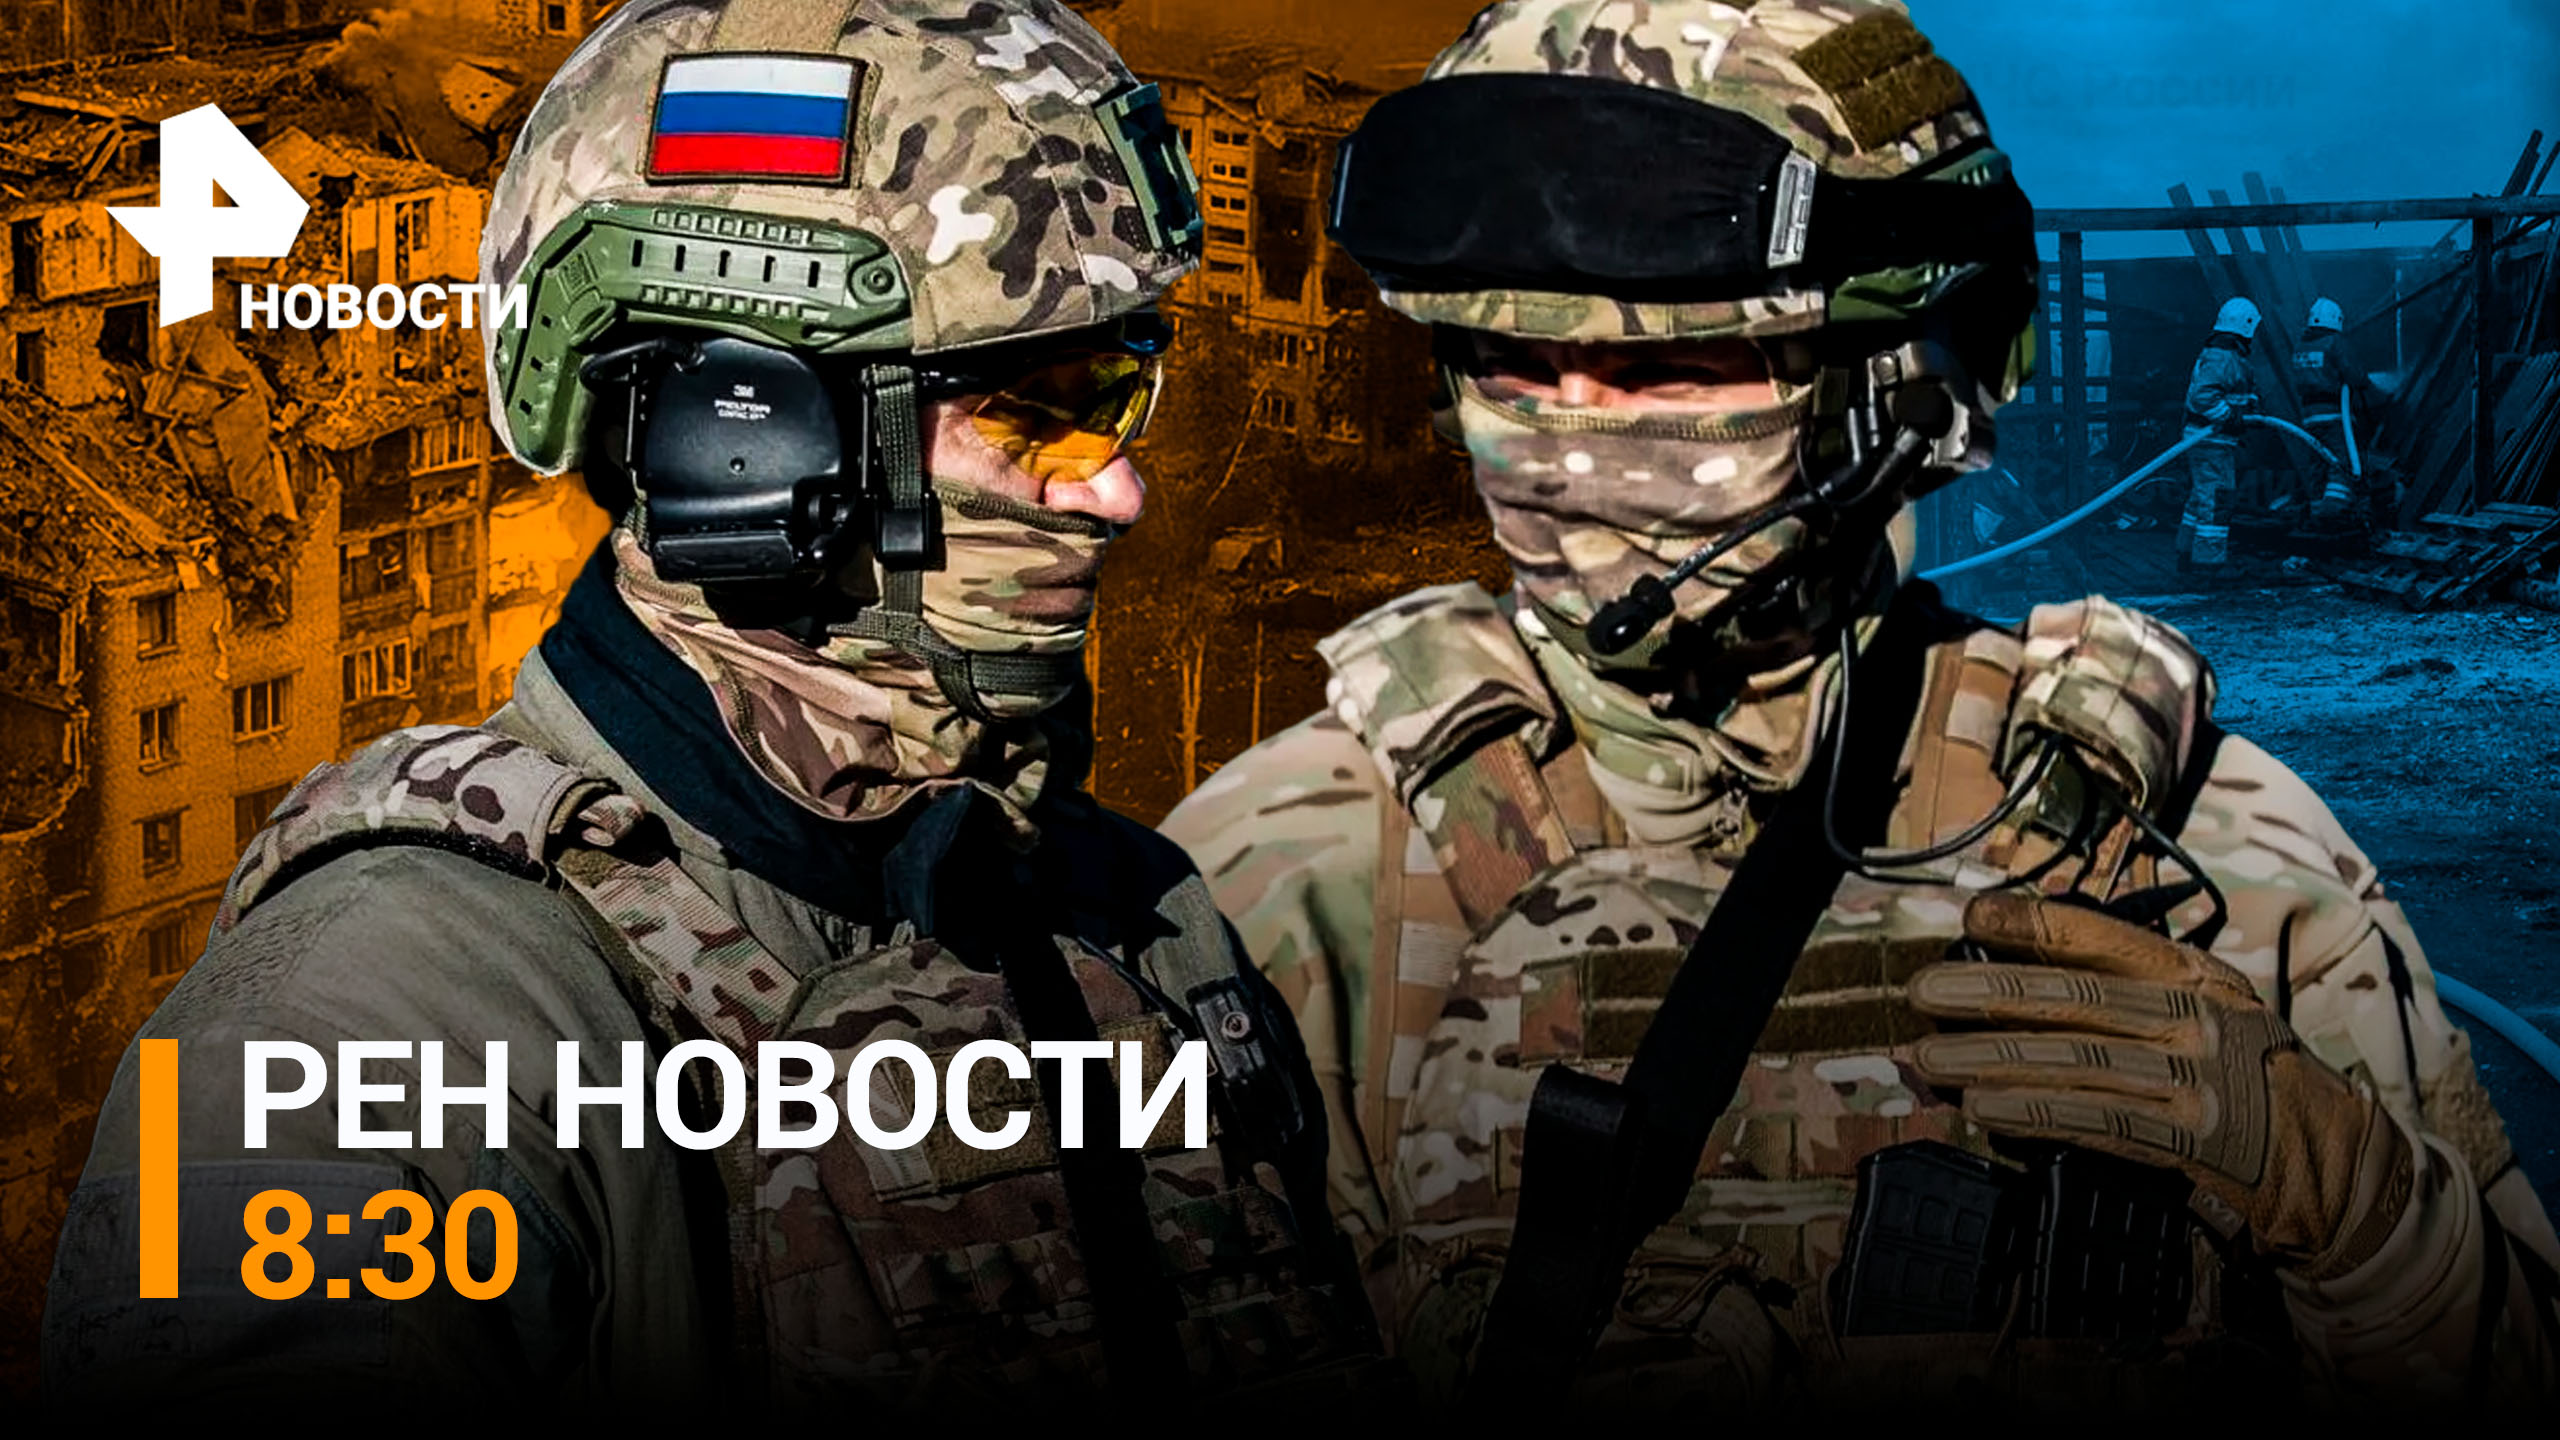 Как беспилотники уничтожают укрепрайоны ВСУ под Лисичанском / РЕН НОВОСТИ 8:30 от 24.04.23